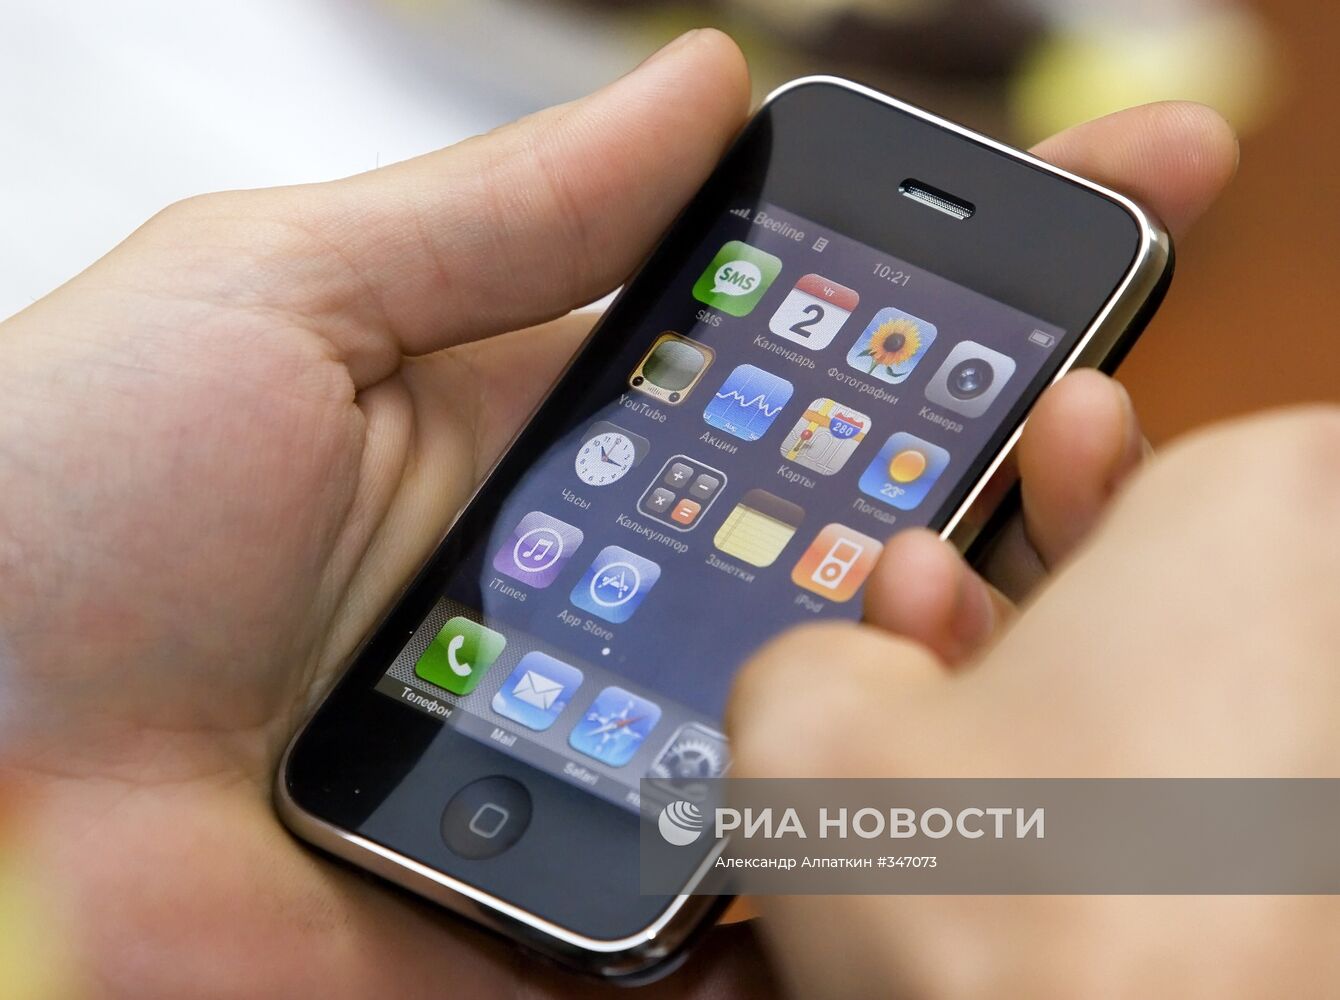 Мобильный телефон iPhone 3G